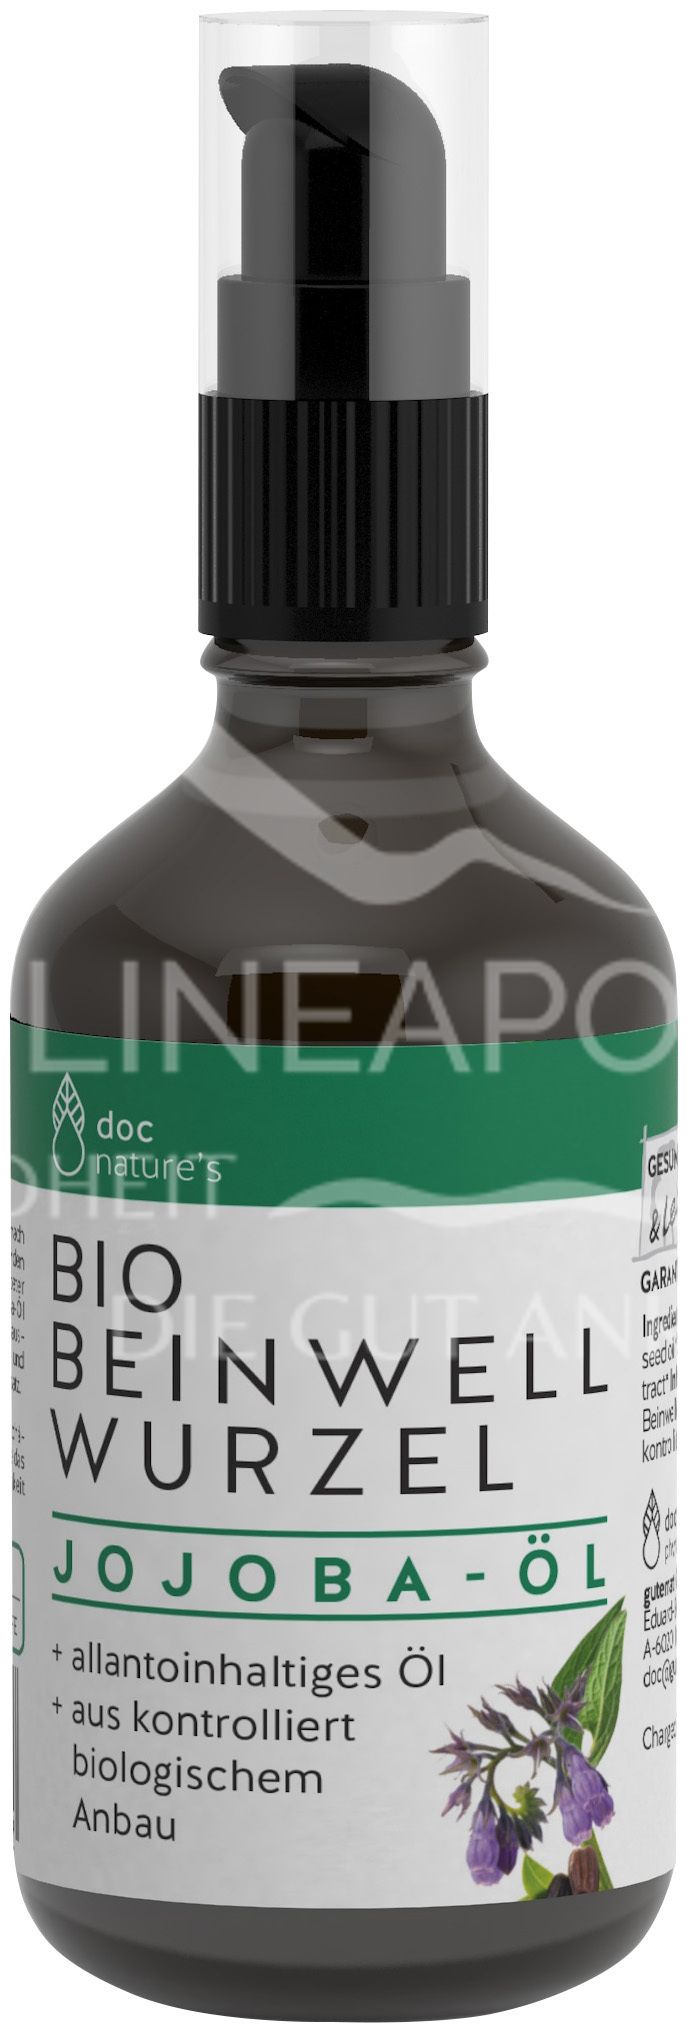 doc nature’s Bio BEINWELL WURZEL Jojoba-Öl Spray